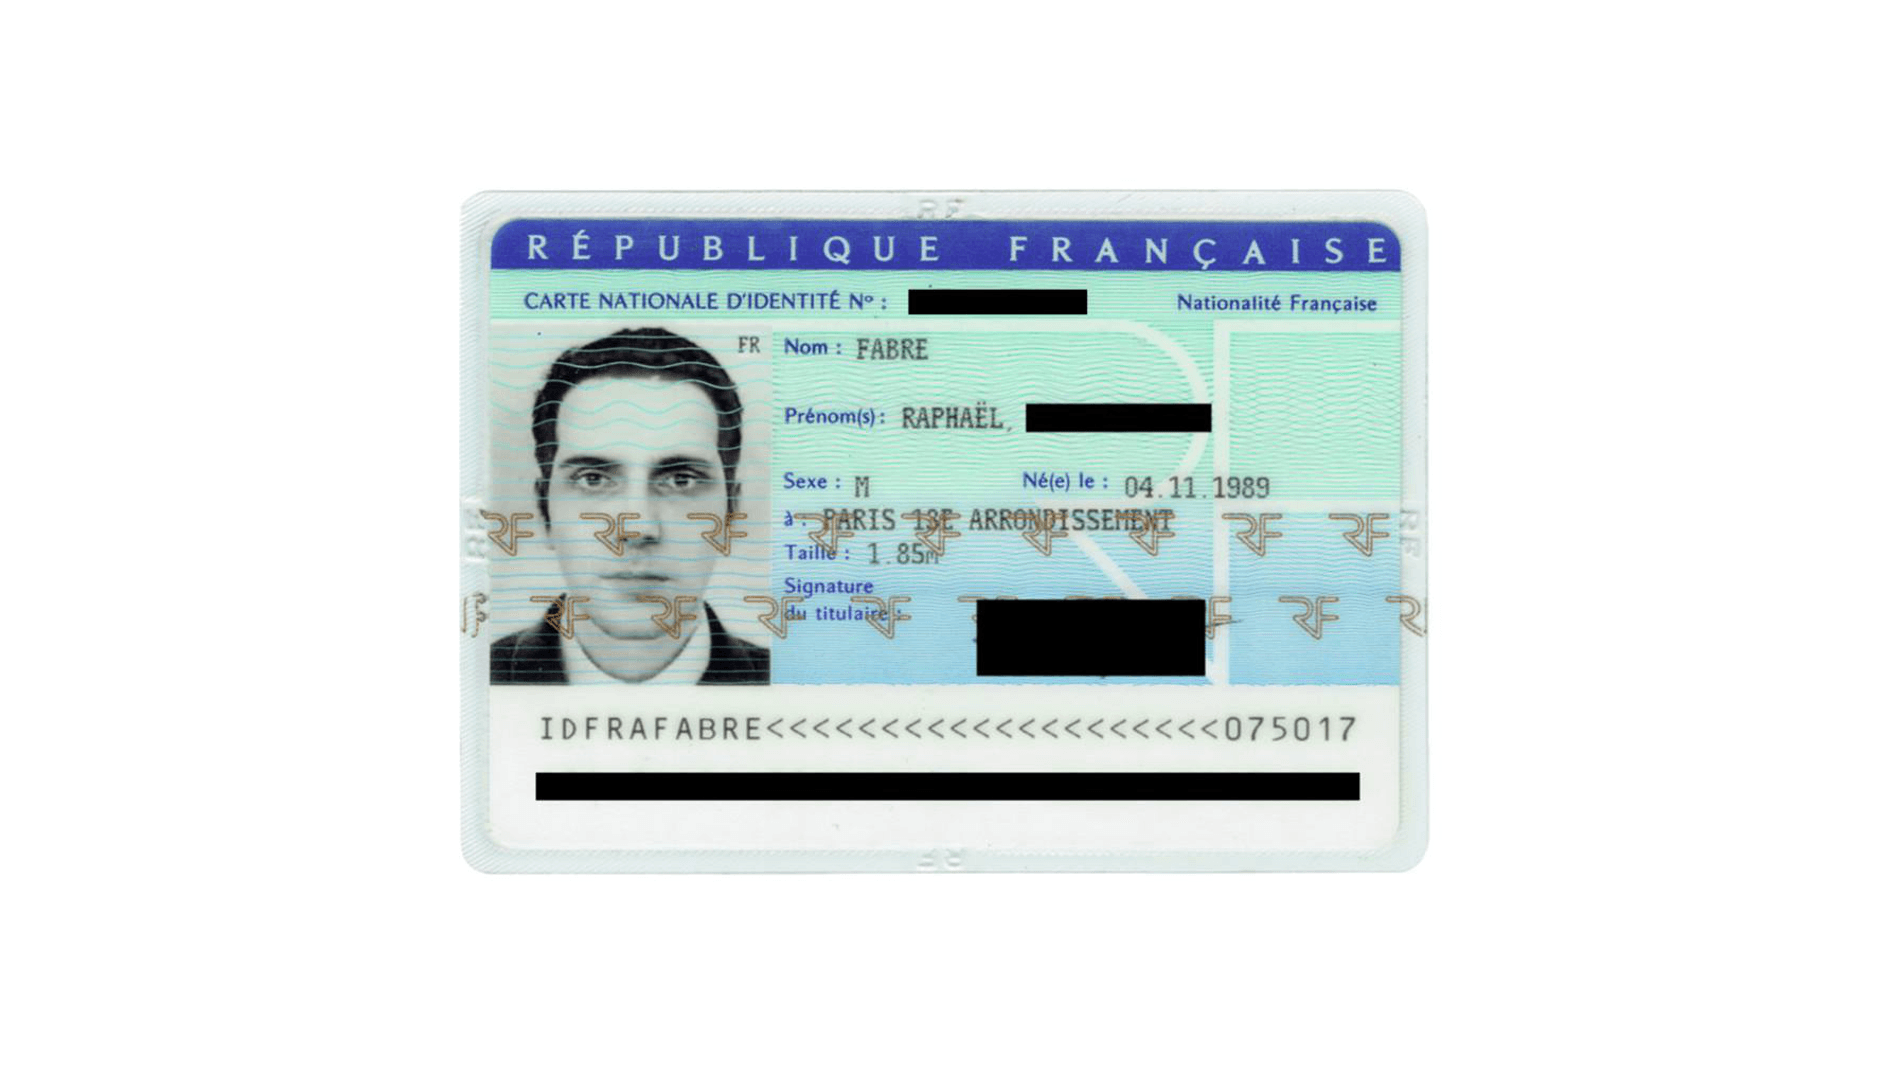 Id eu. Франция ID Card. Французская ID карта. Франция ID Card 2021. Carte nationale d'identité шаблон.